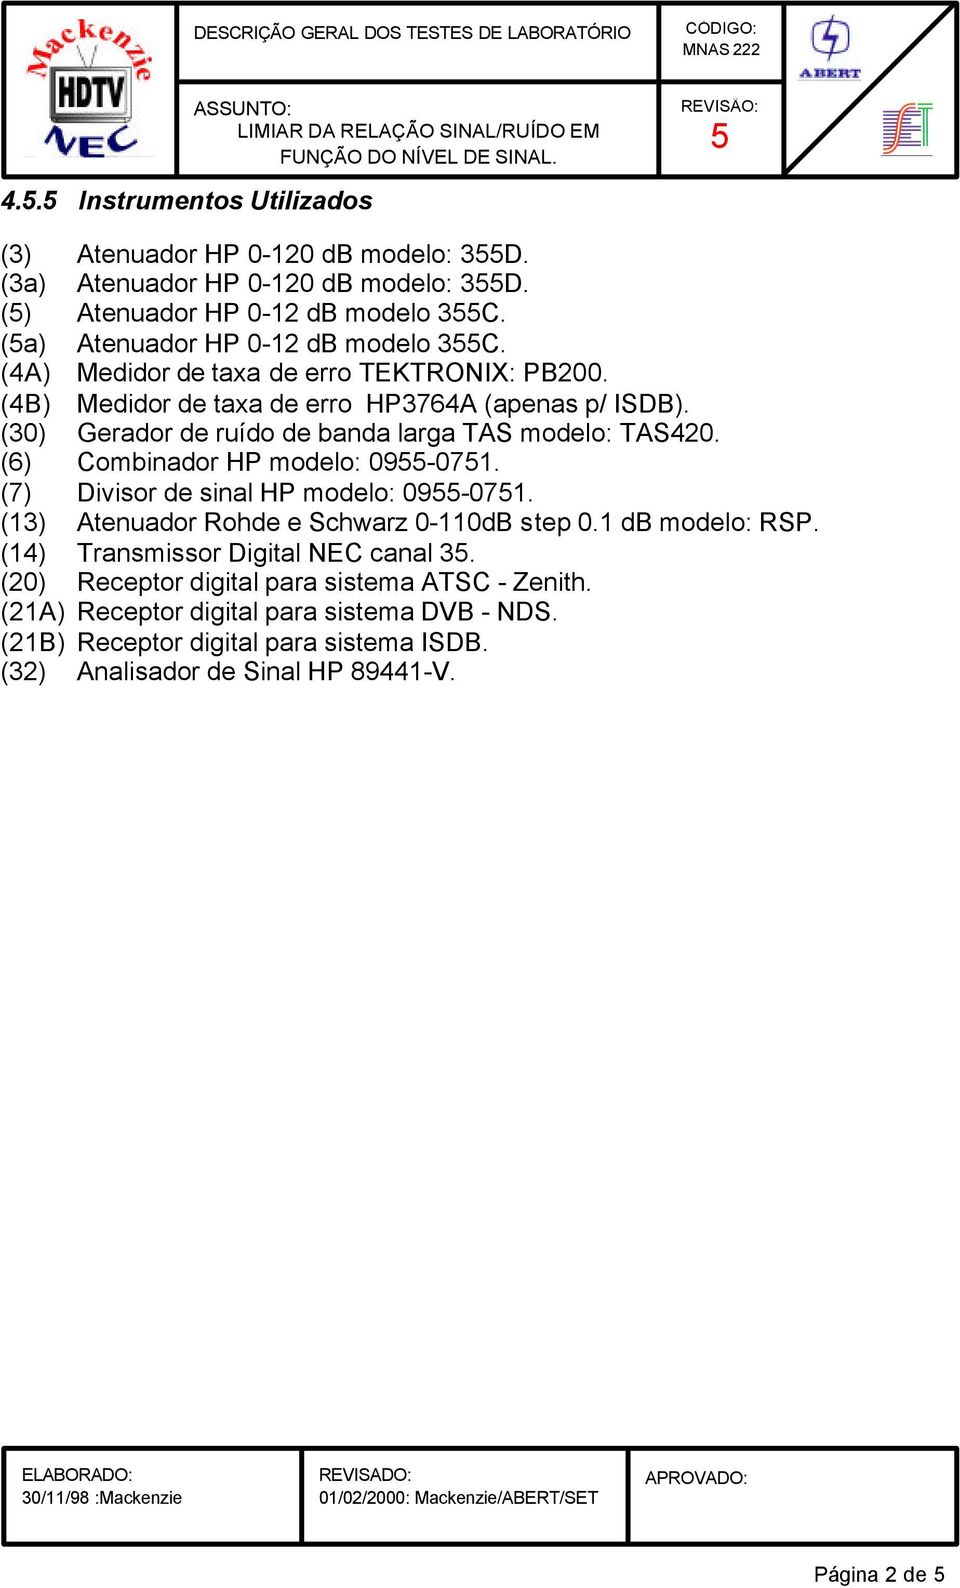 (6) Combinador HP modelo: 09-071. (7) Divisor de sinal HP modelo: 09-071. (13) Atenuador Rohde e Schwarz 0-110dB step 0.1 db modelo: RSP. (14) Transmissor Digital NEC canal 3.